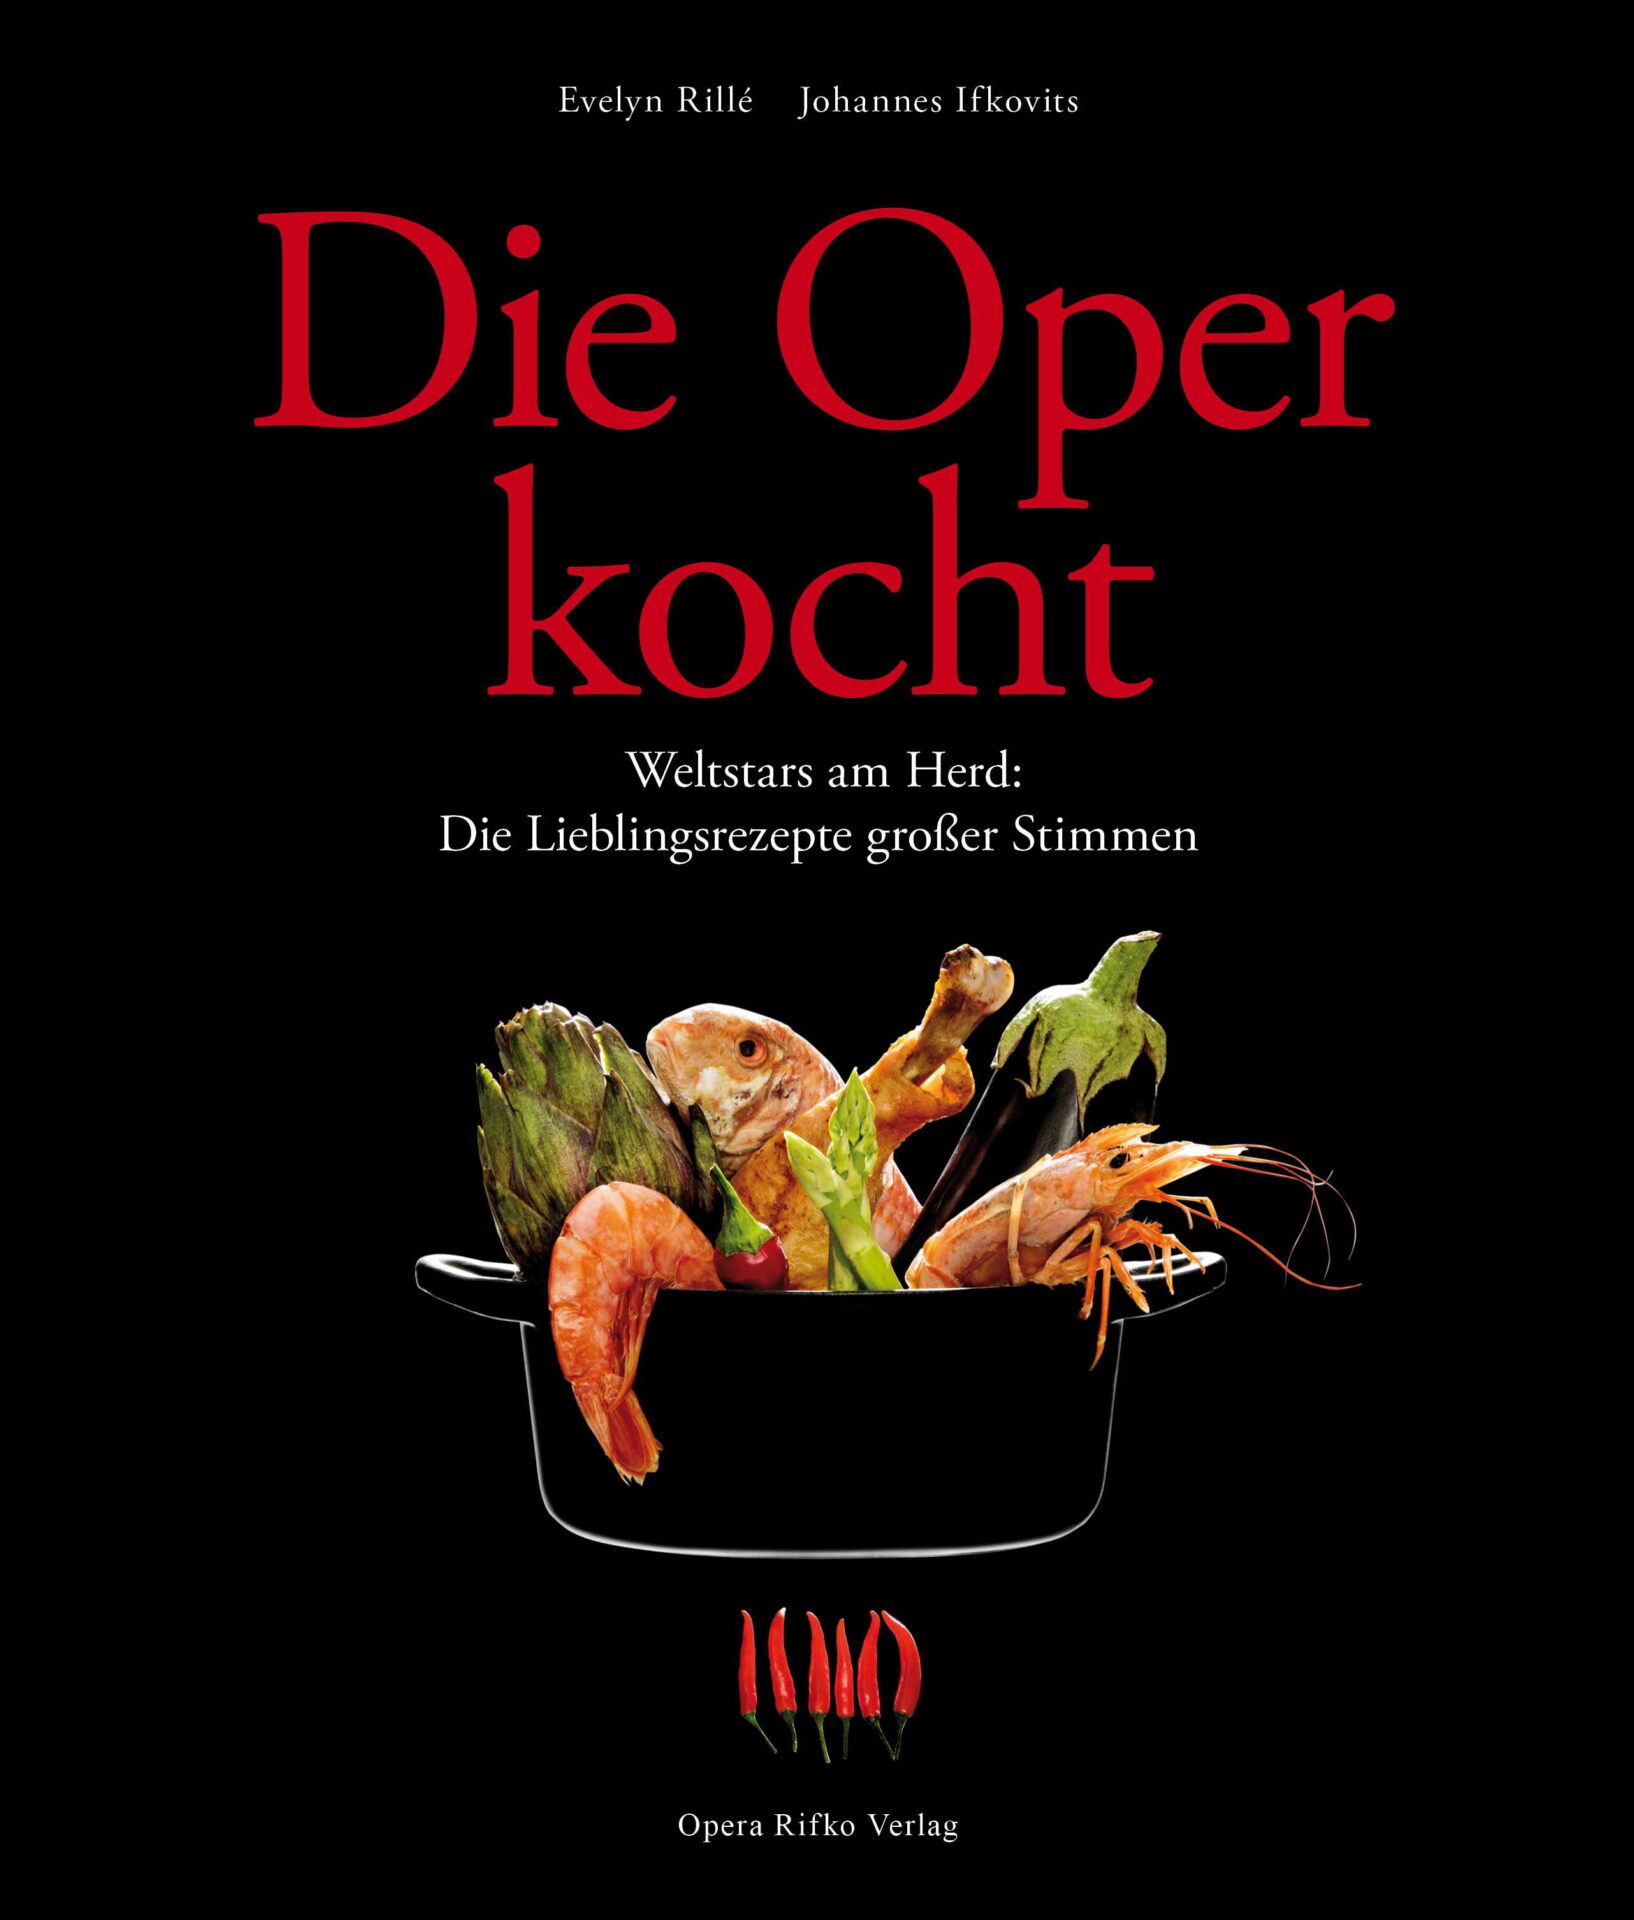 Buchbesprechung: Die Oper kocht. Weltstars am Herd: Die Lieblingsrezepte großer Stimmen  klassik-begeistert.de, 29. Januar 2023